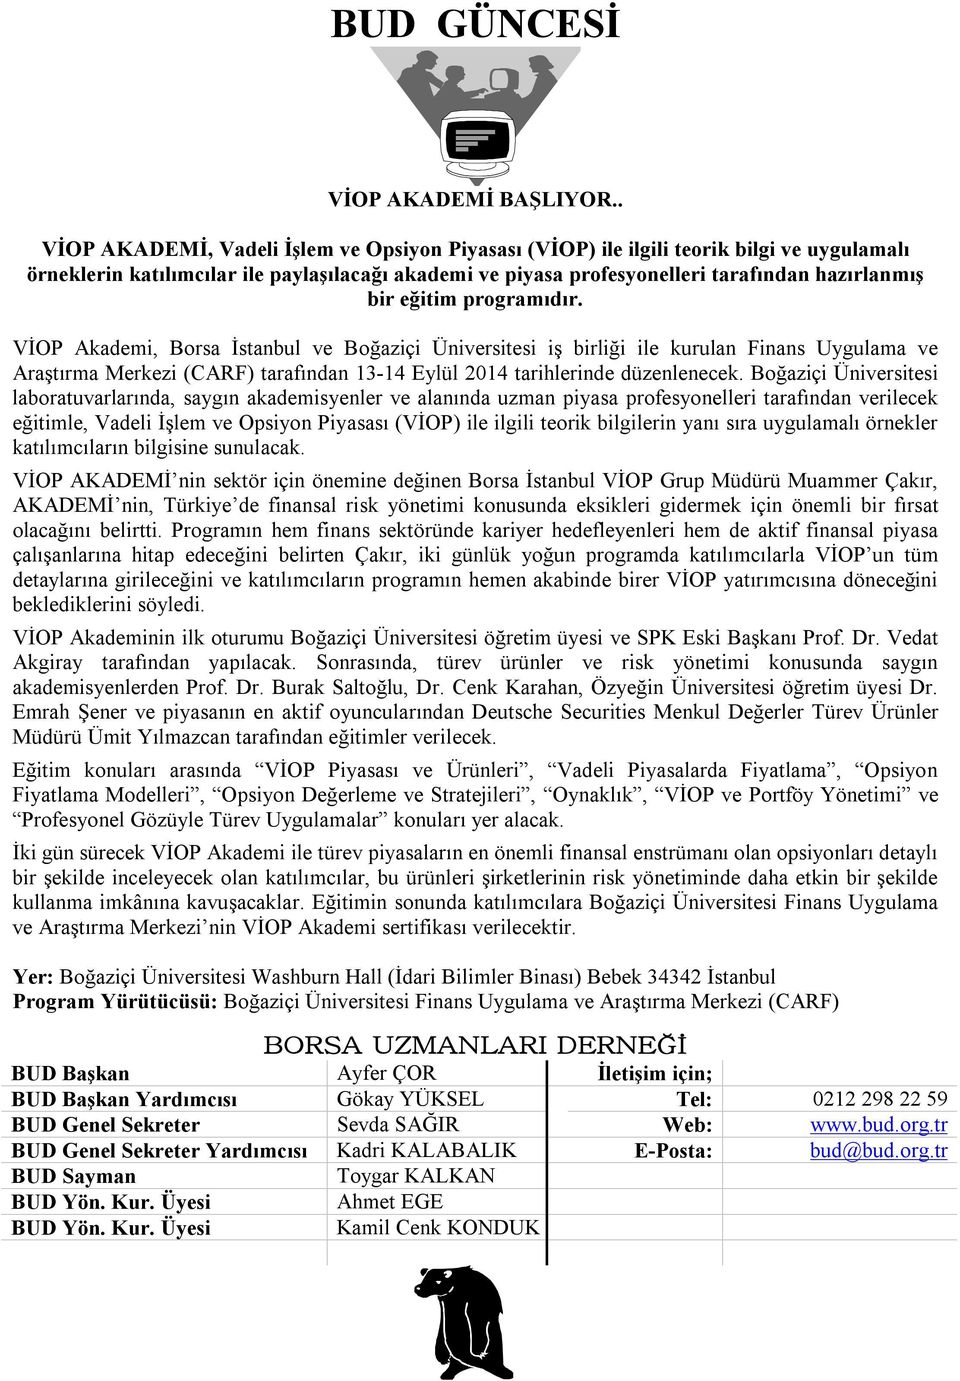 eğitim programıdır. VİOP Akademi, Borsa İstanbul ve Boğaziçi Üniversitesi iş birliği ile kurulan Finans Uygulama ve Araştırma Merkezi (CARF) tarafından 13-14 Eylül 2014 tarihlerinde düzenlenecek.